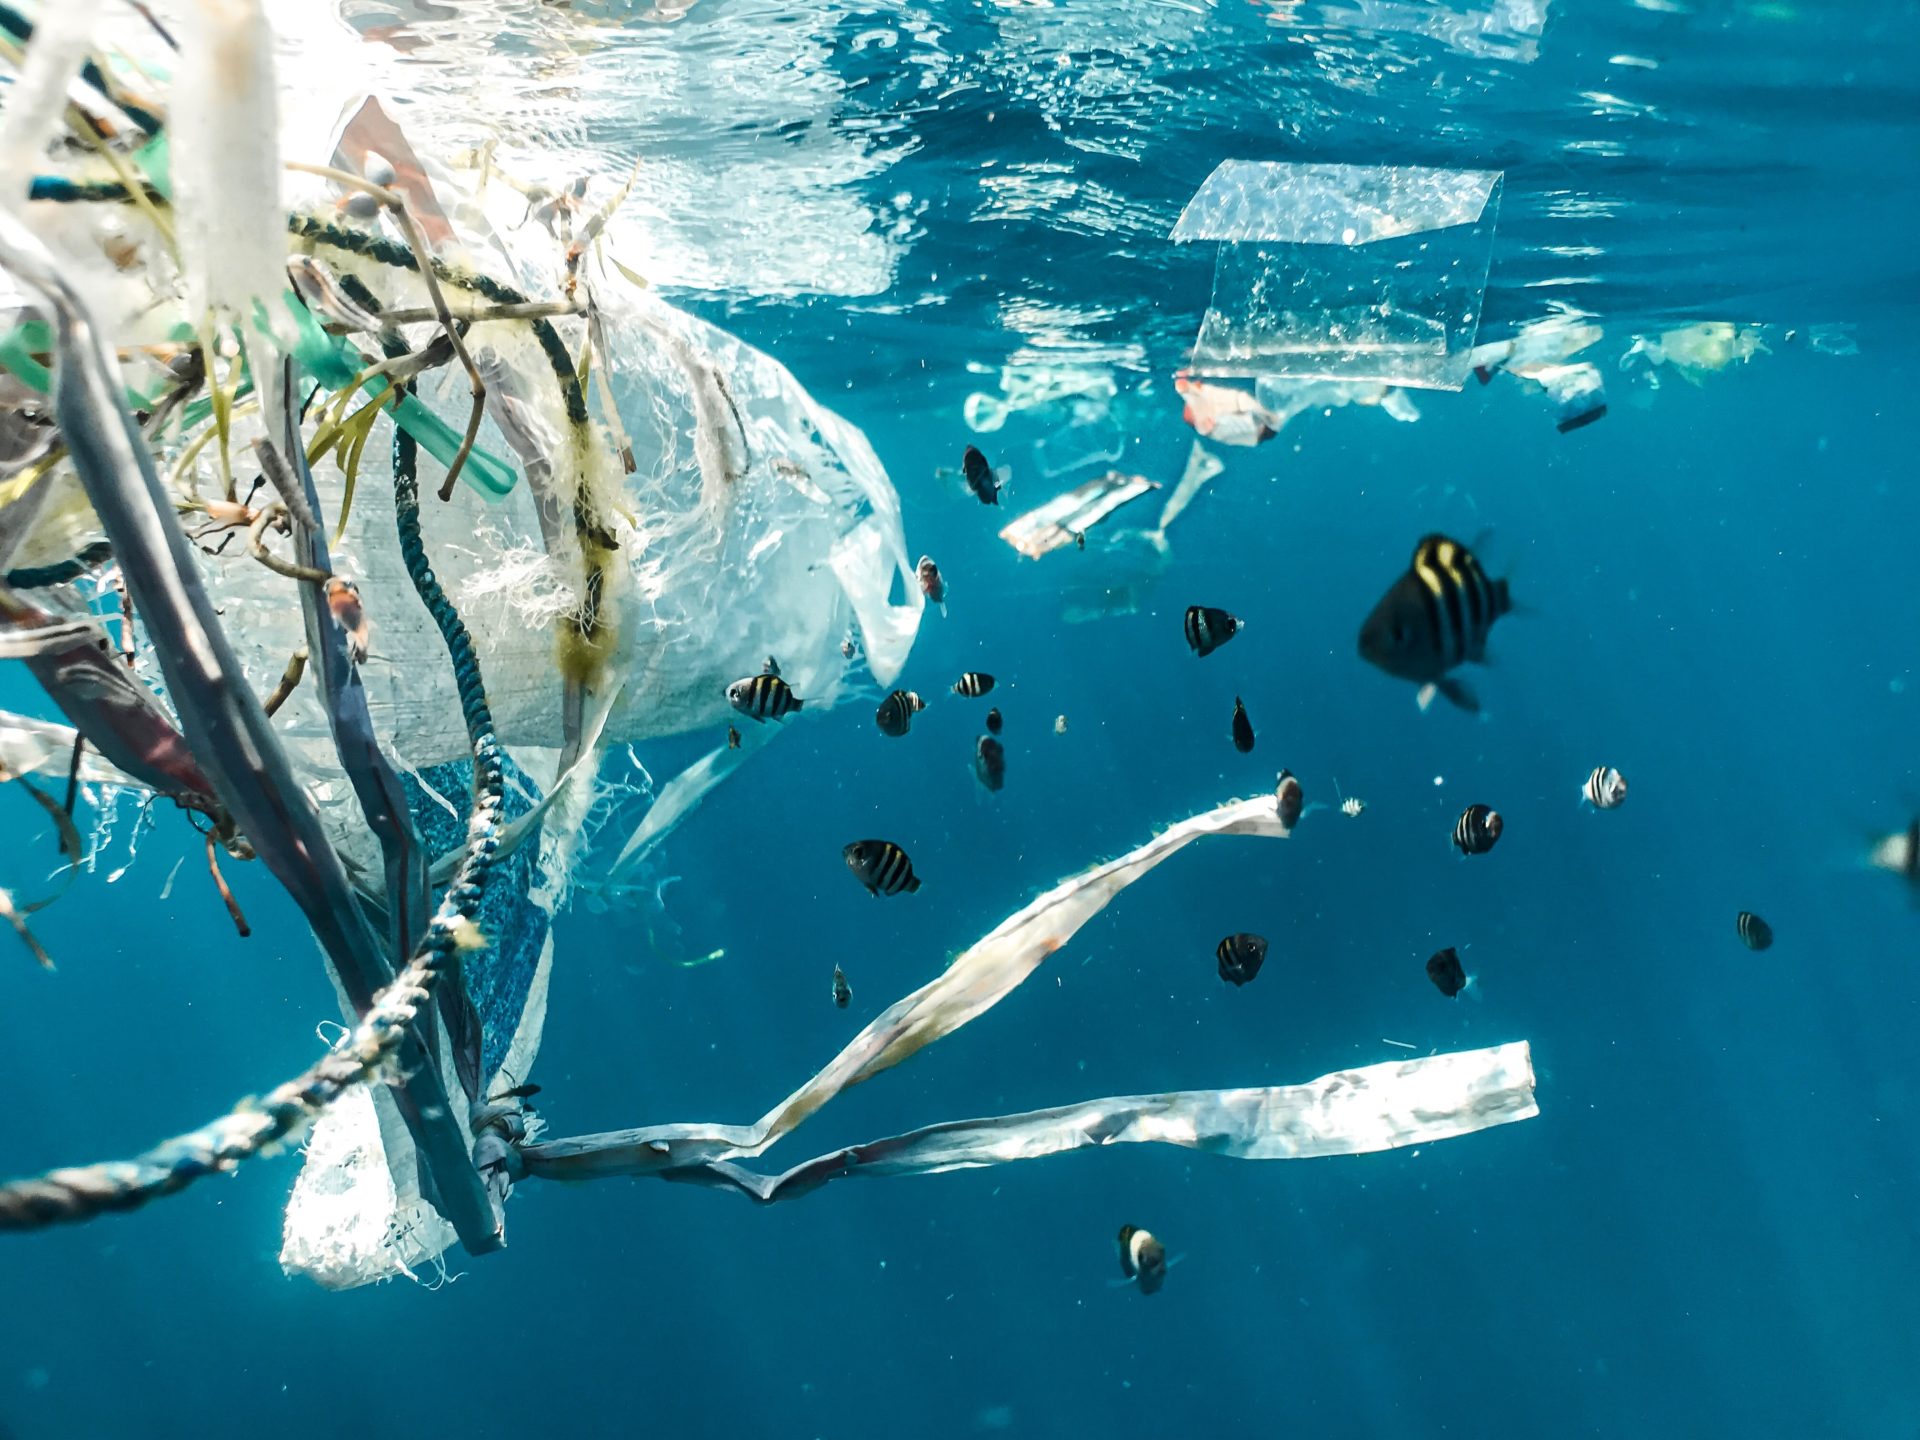 8 inspiring innovations tackling plastic pollution